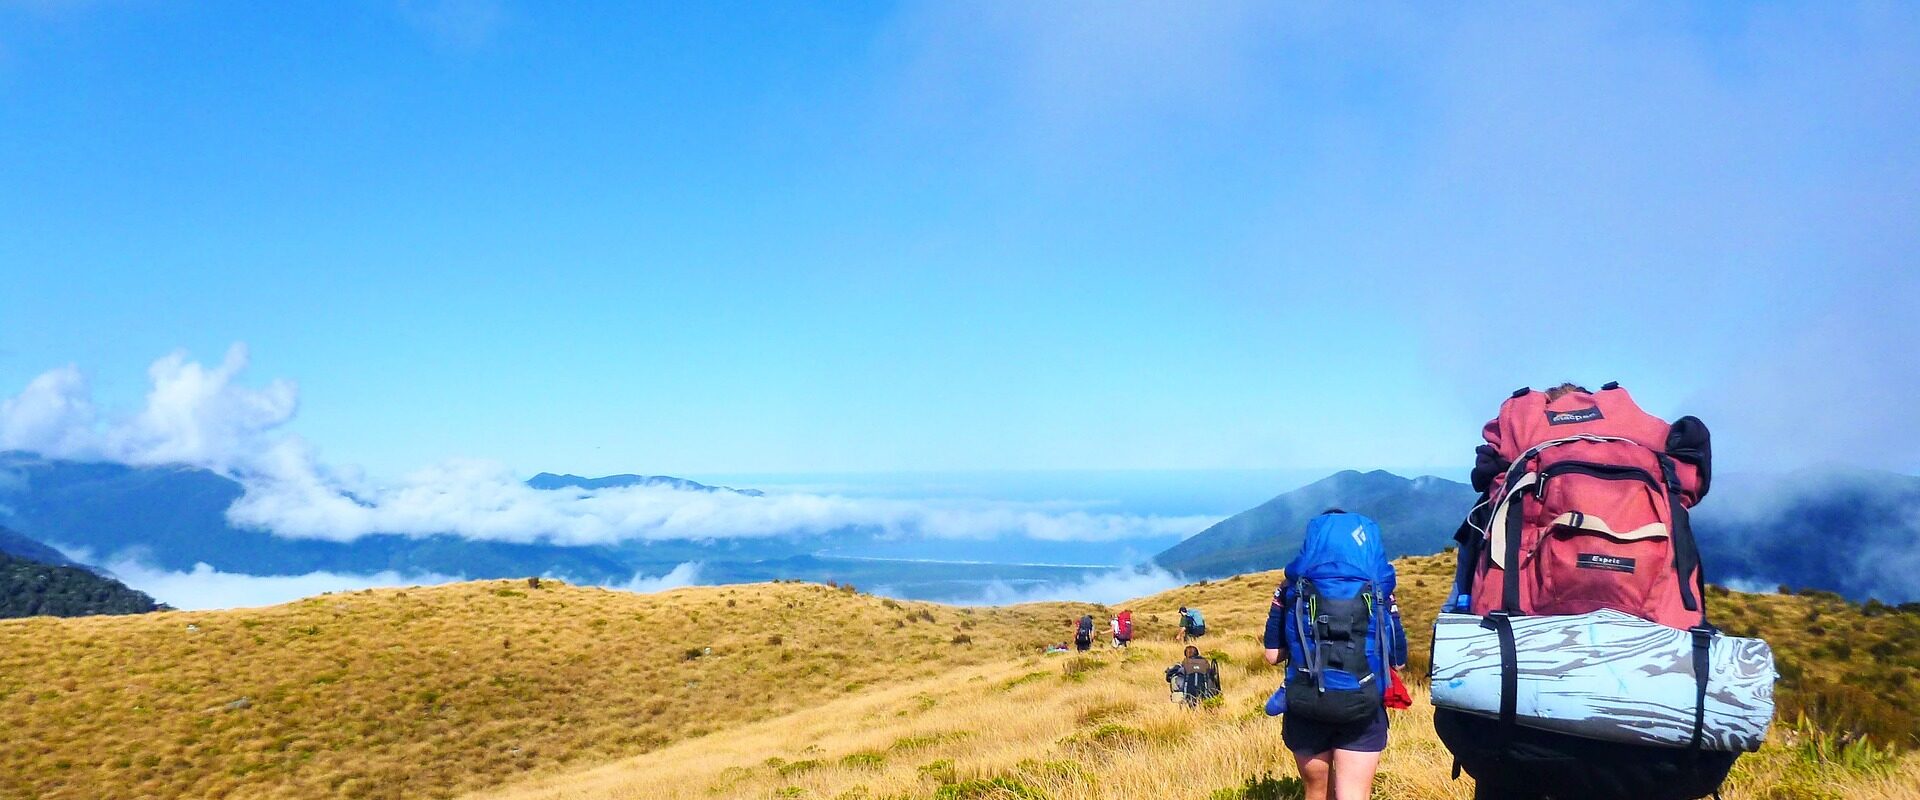 randonnée activité outdoor Nouvelle-Zélande